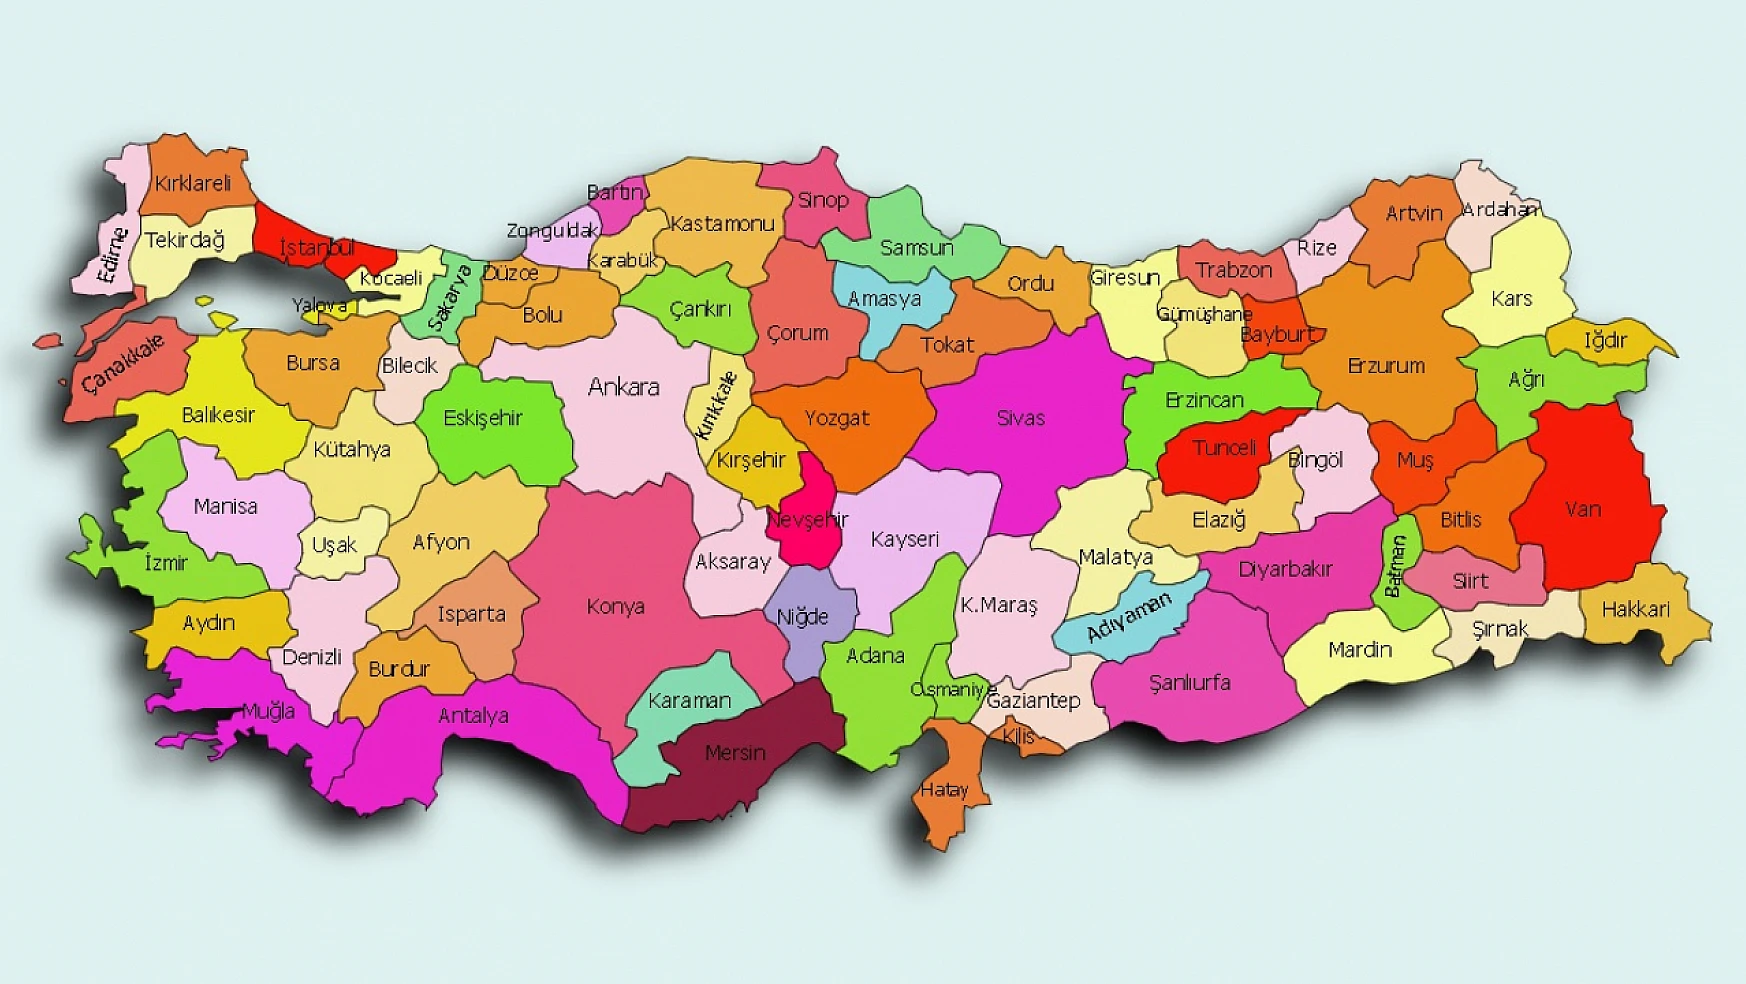 Cebinizi düşünün: İşte Türkiye'nin bütçe dostu şehirleri!